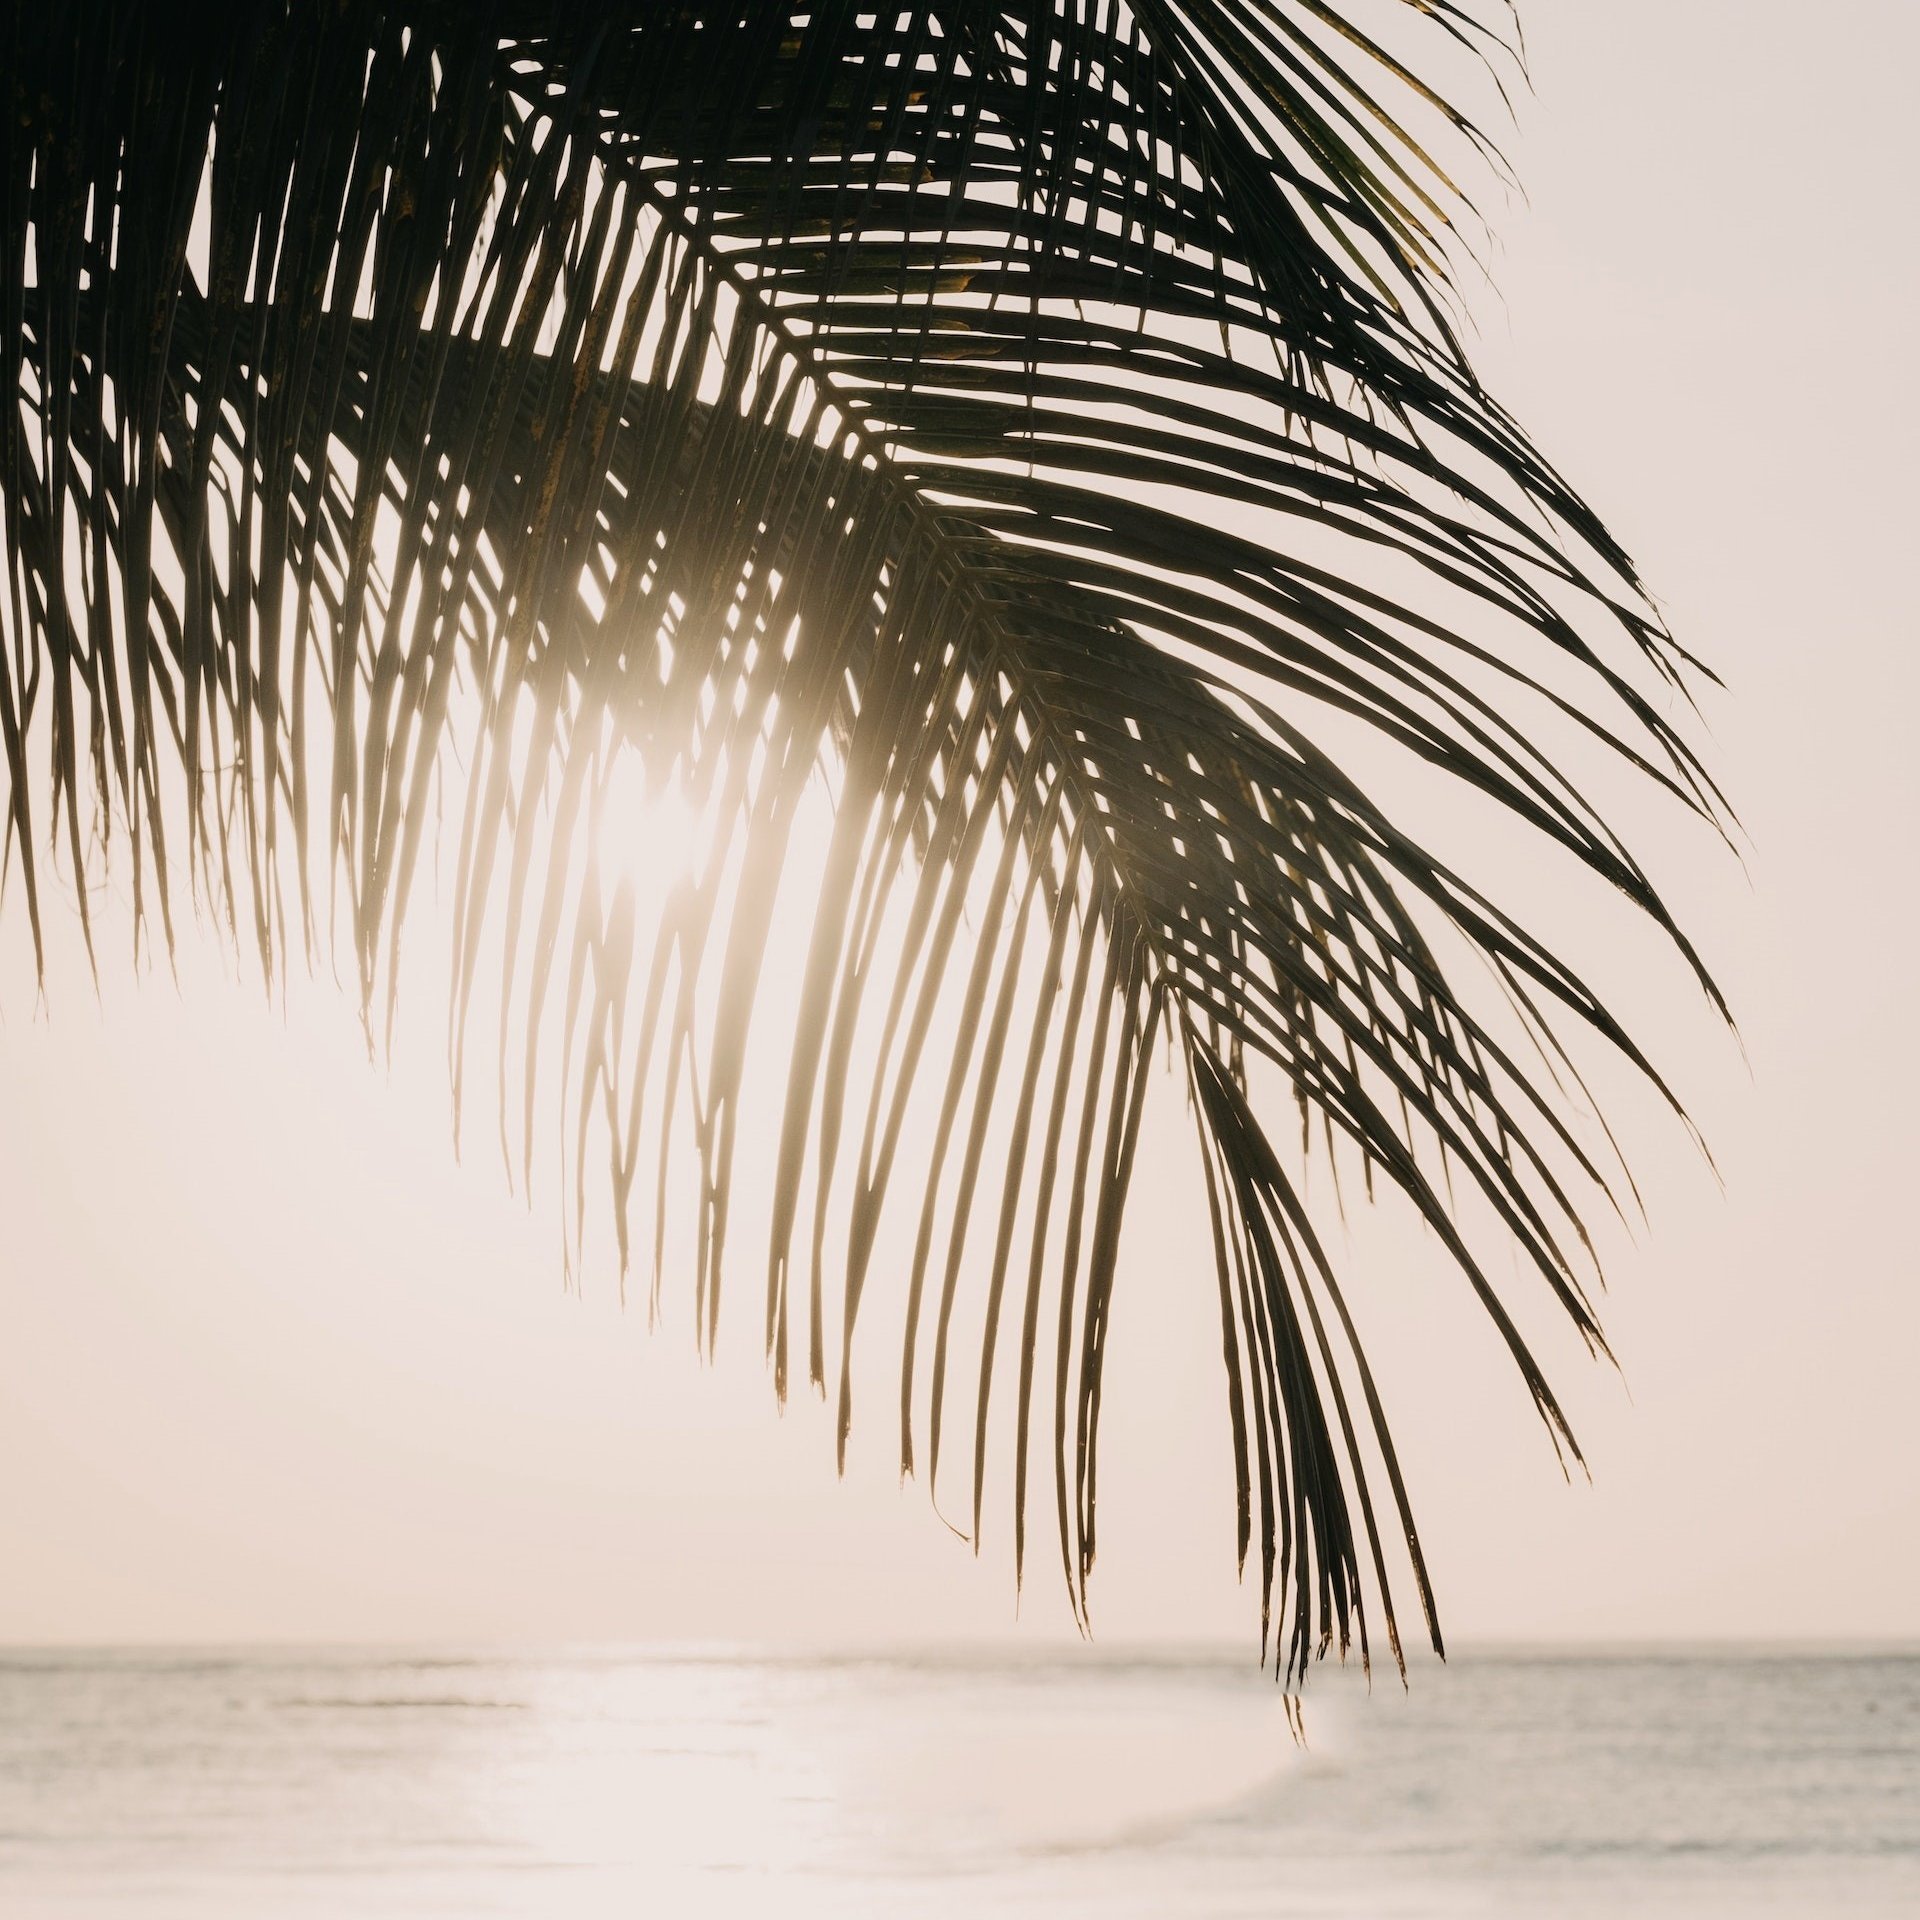 Palmwedel im Hintergrund das Meer